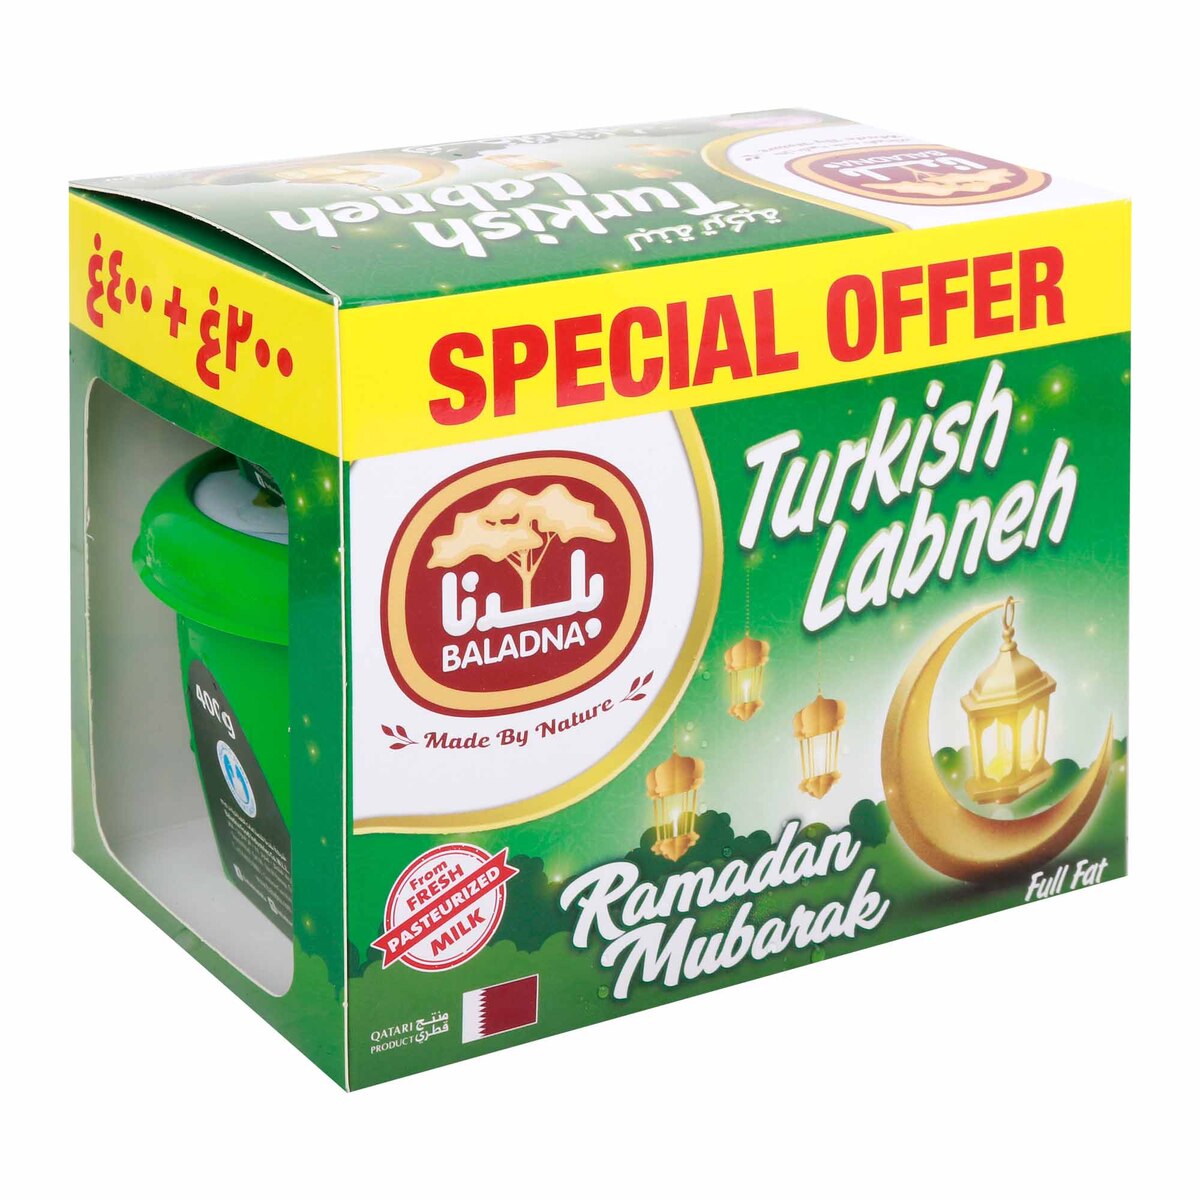 Baladna Full Fat Turkish Labneh 400 g + 200 g